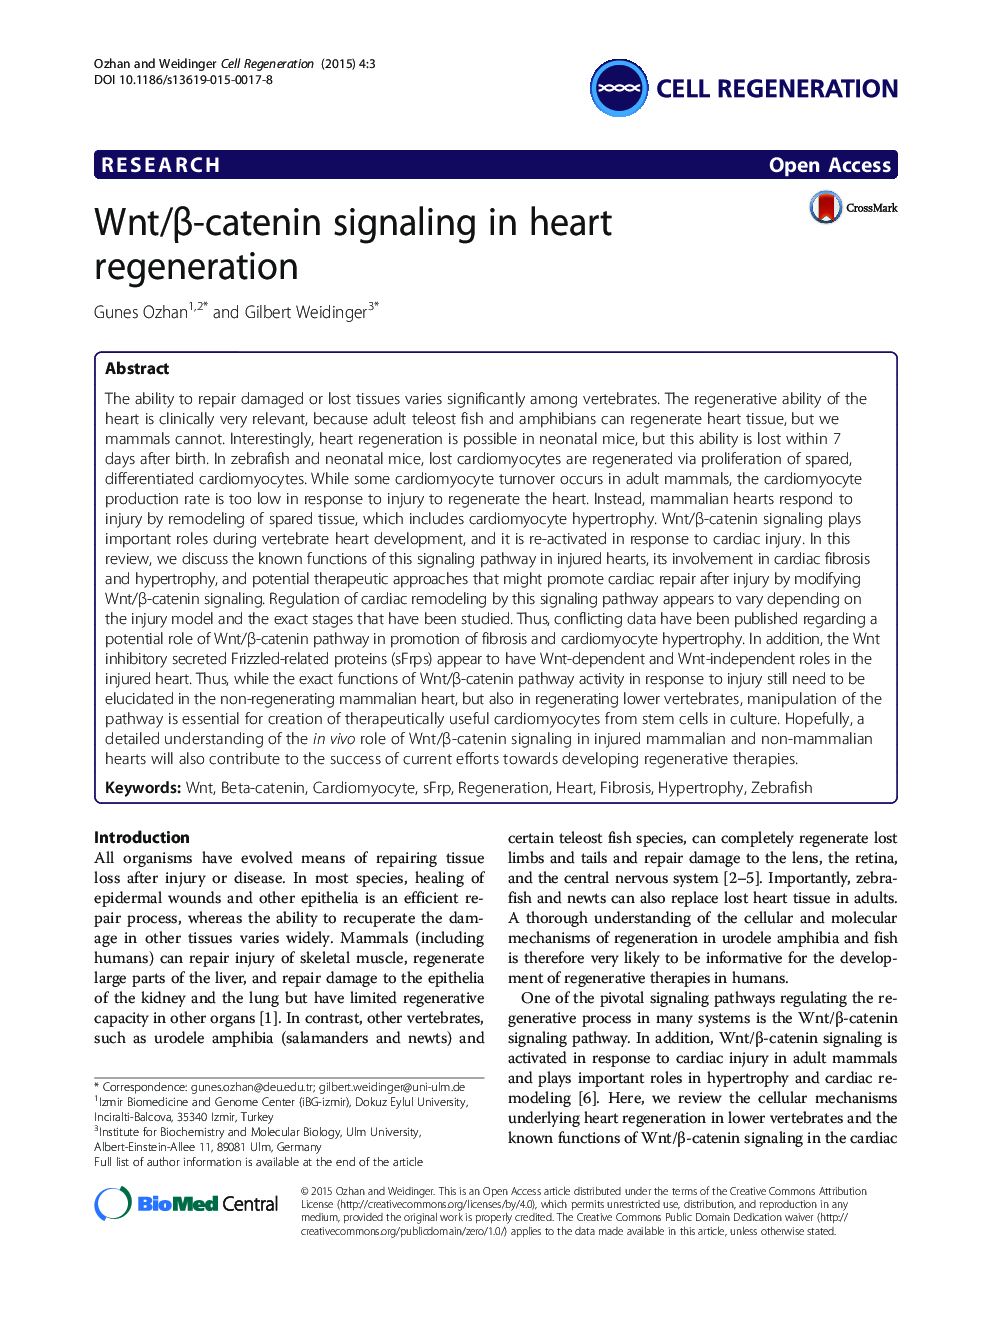 Wnt/Î²-catenin signaling in heart regeneration